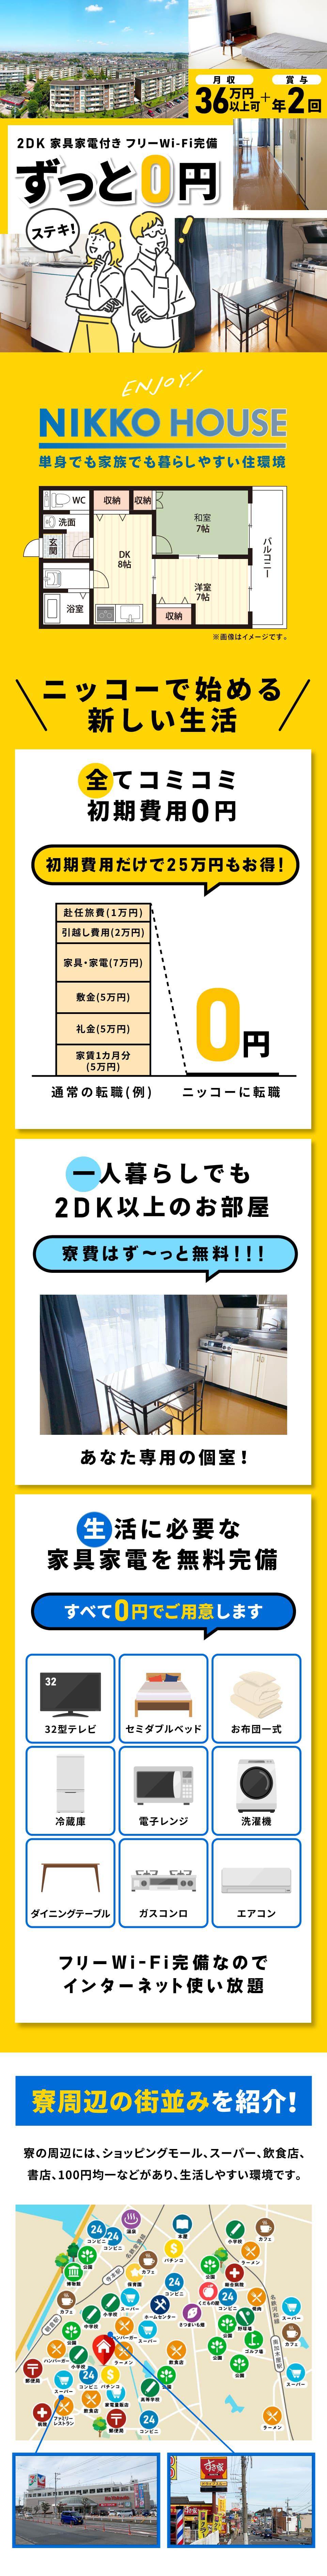 2DKにずっと0円で住める工場求人